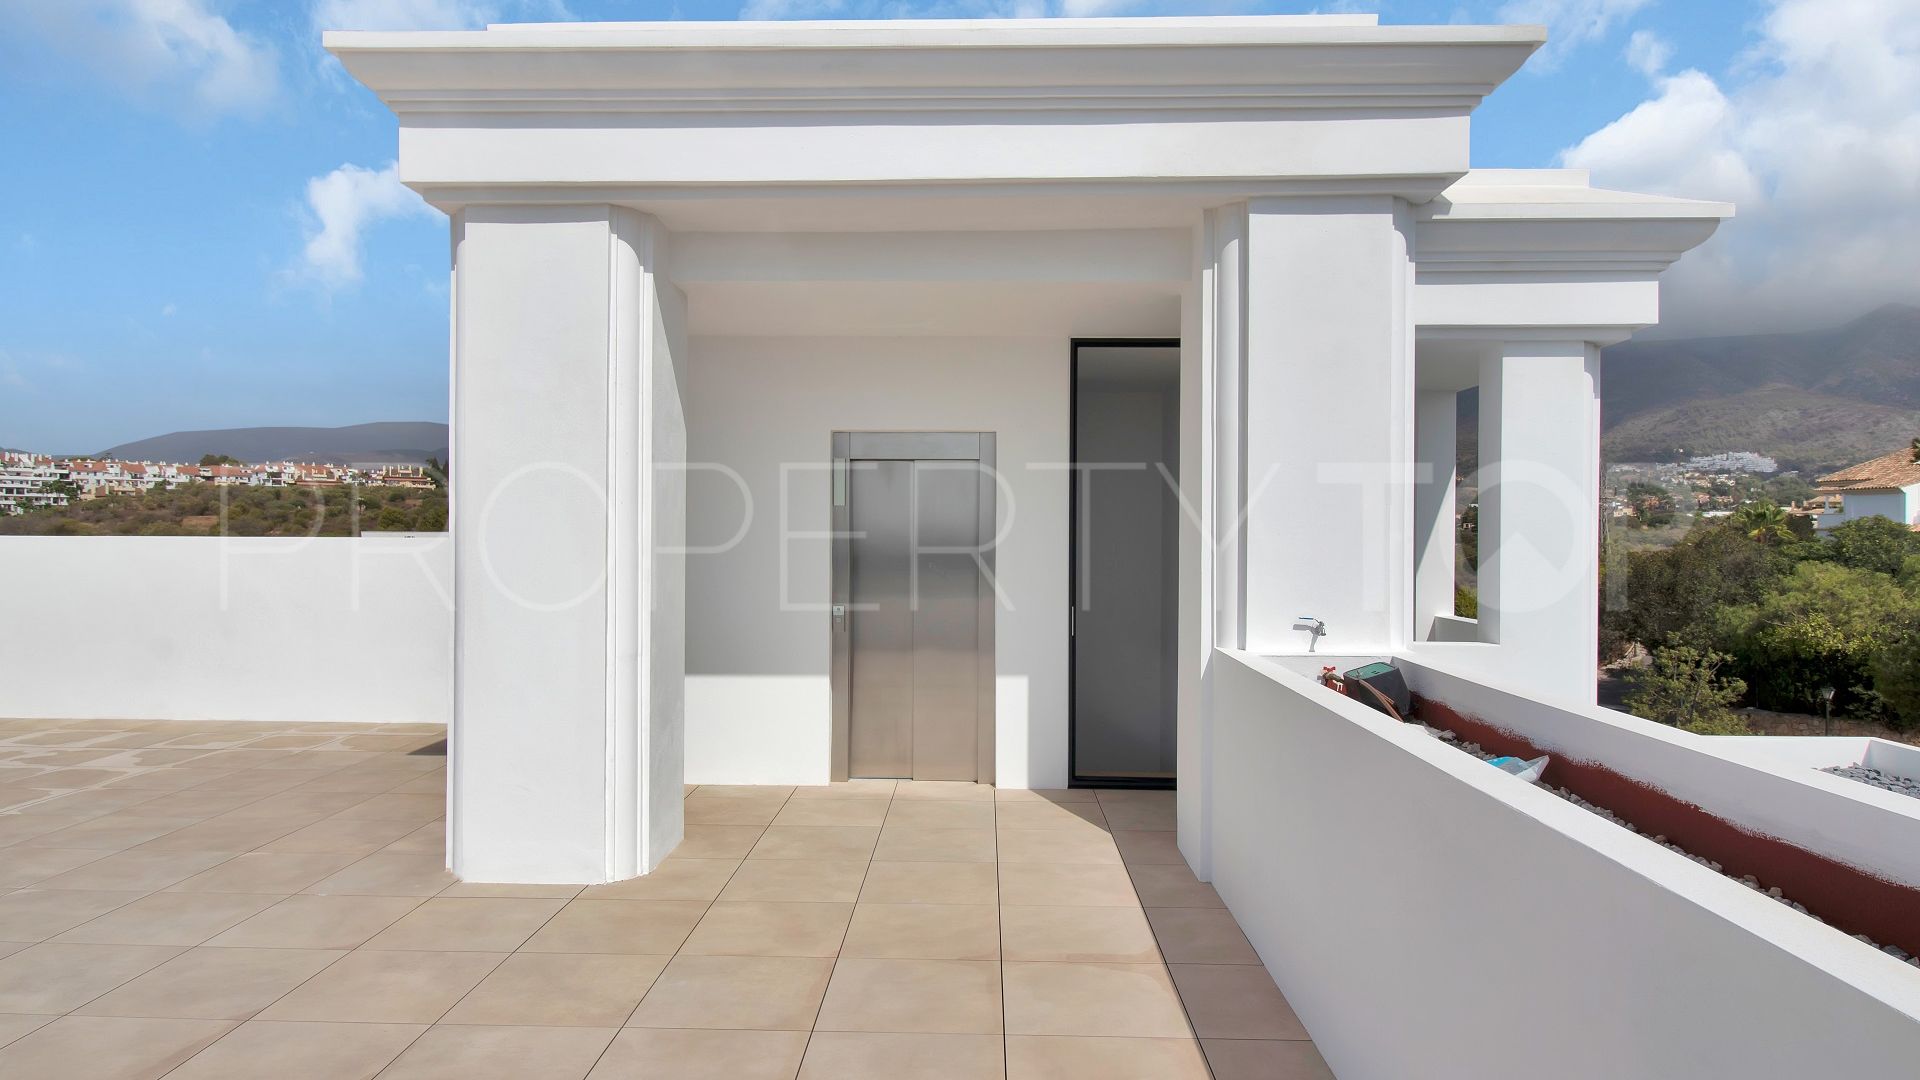 5 bedrooms Las Lomas de Marbella villa for sale